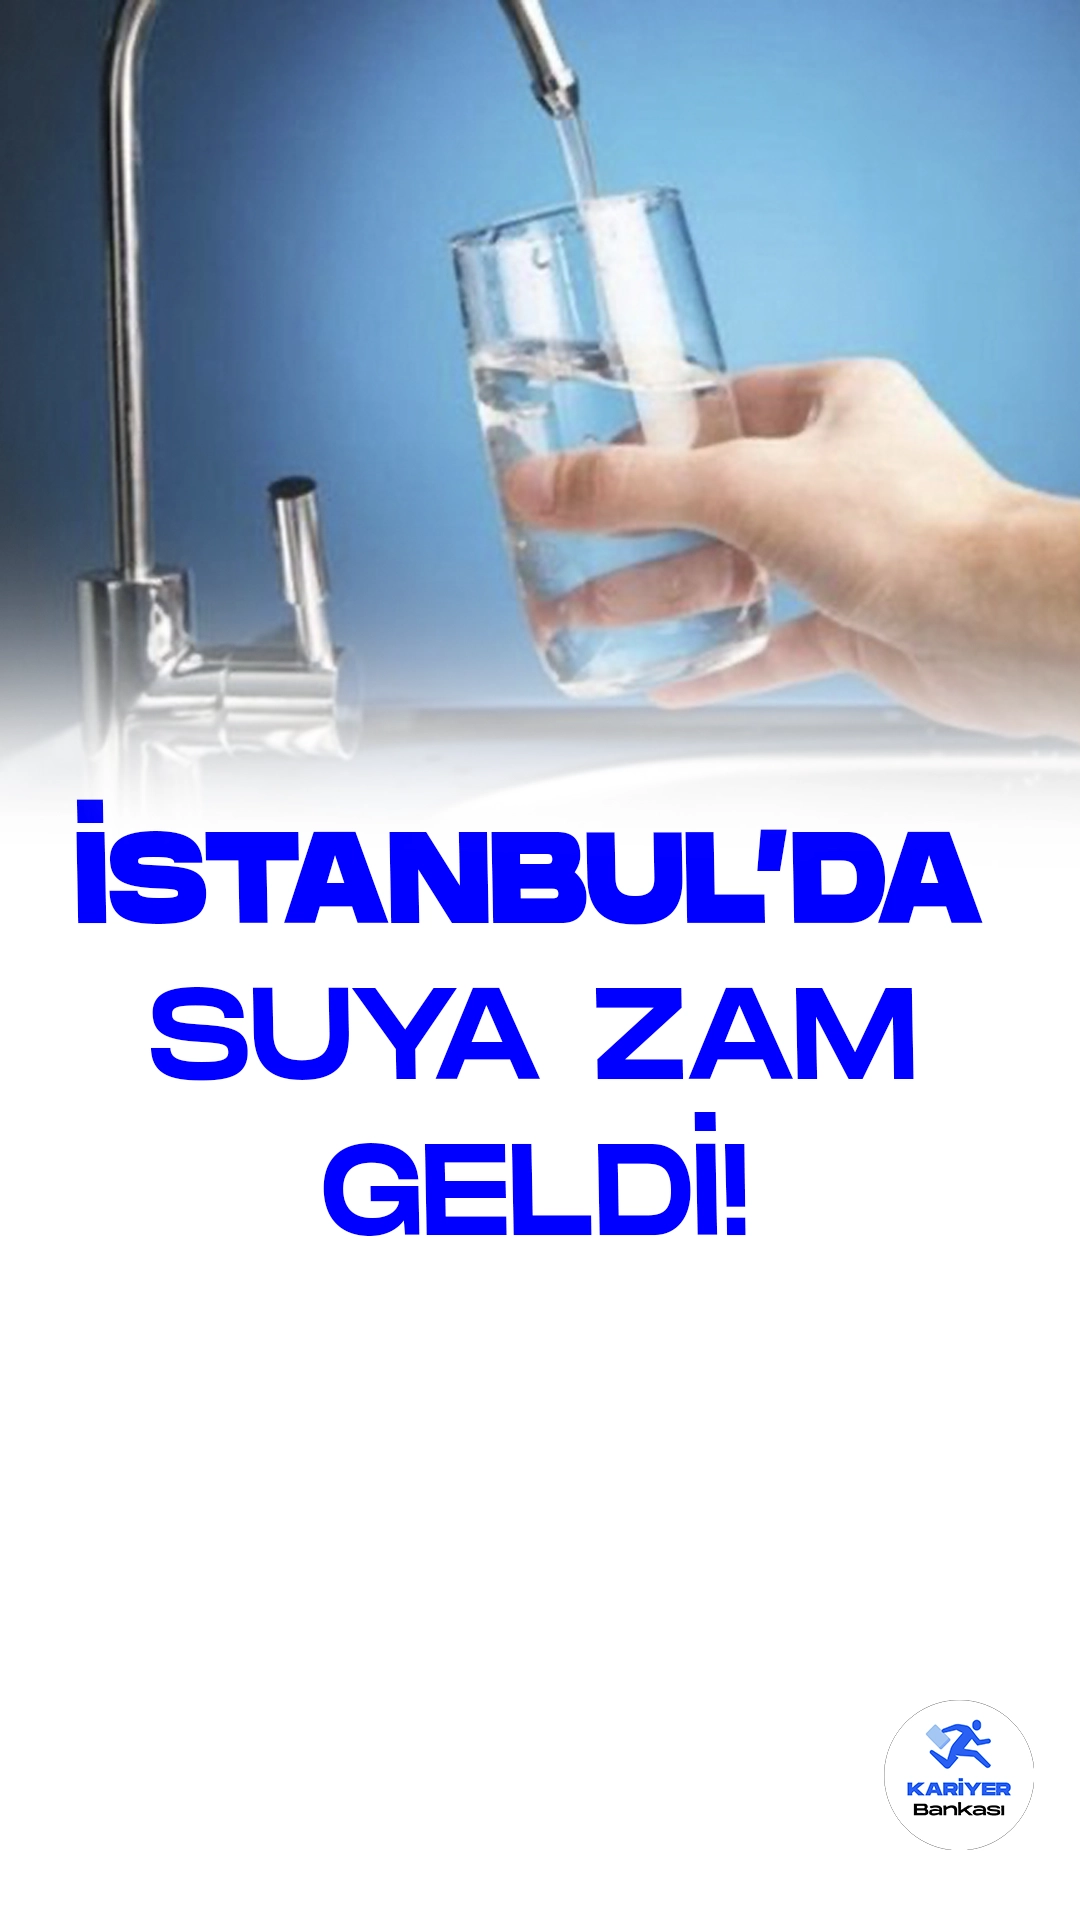 İstanbul'da Suya Yüzde 25 Zam Geldi.İstanbul Büyükşehir Belediye Meclisi, su tarifelerinde önemli bir güncelleme yaparak su fiyatlarına yüzde 25 zam kararı aldı. Bu kararla birlikte konutlarda kullanılan suyun metreküp başına tarifesi 20,62 liraya yükseldi.